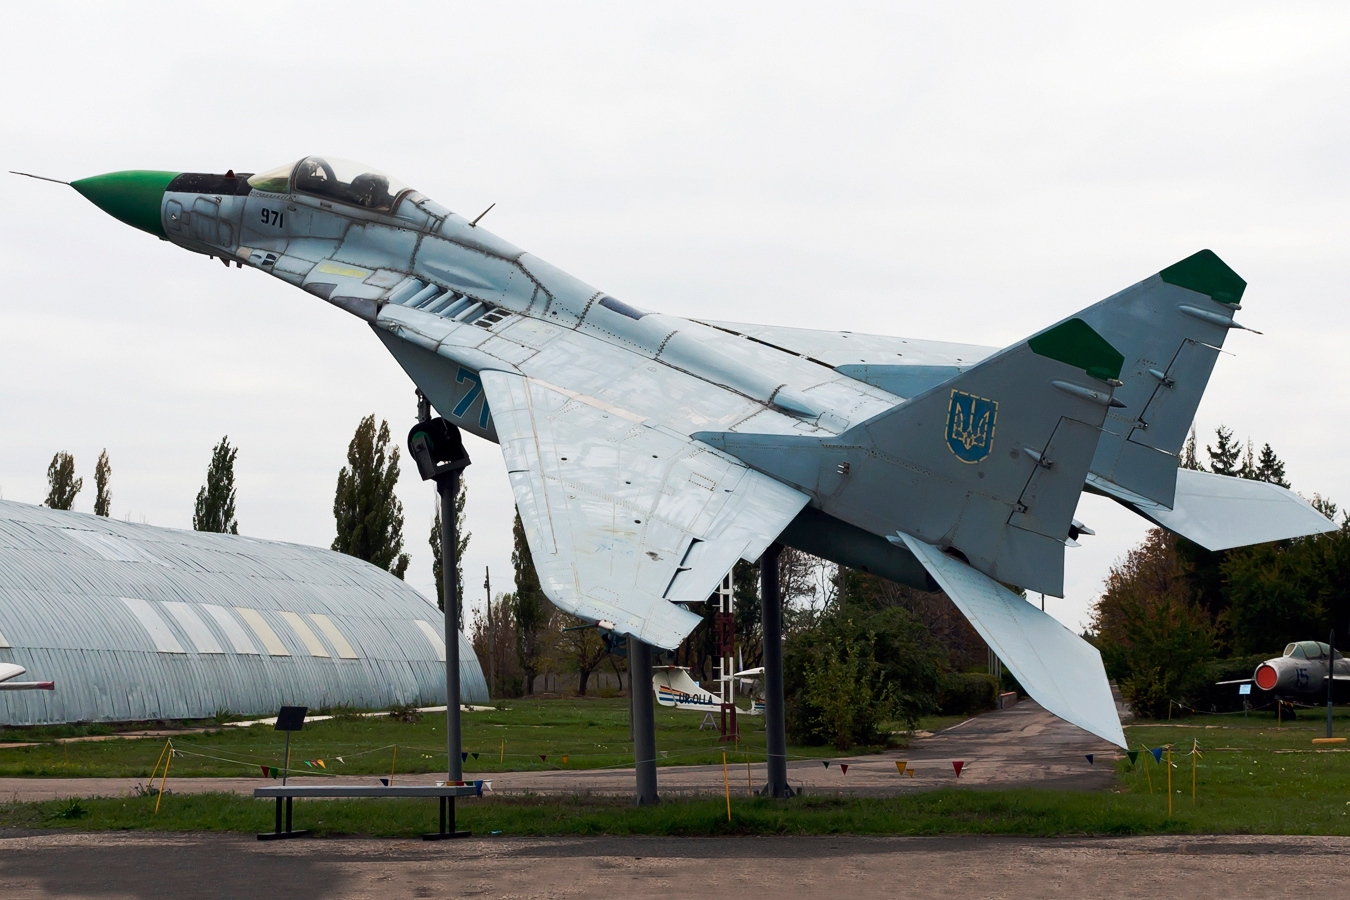 mes derniers achats - Page 5 Mikoyan-Gurevich_MiG-29_Fulcrum%2C_Ukraine_-_Air_Force_JP7250439